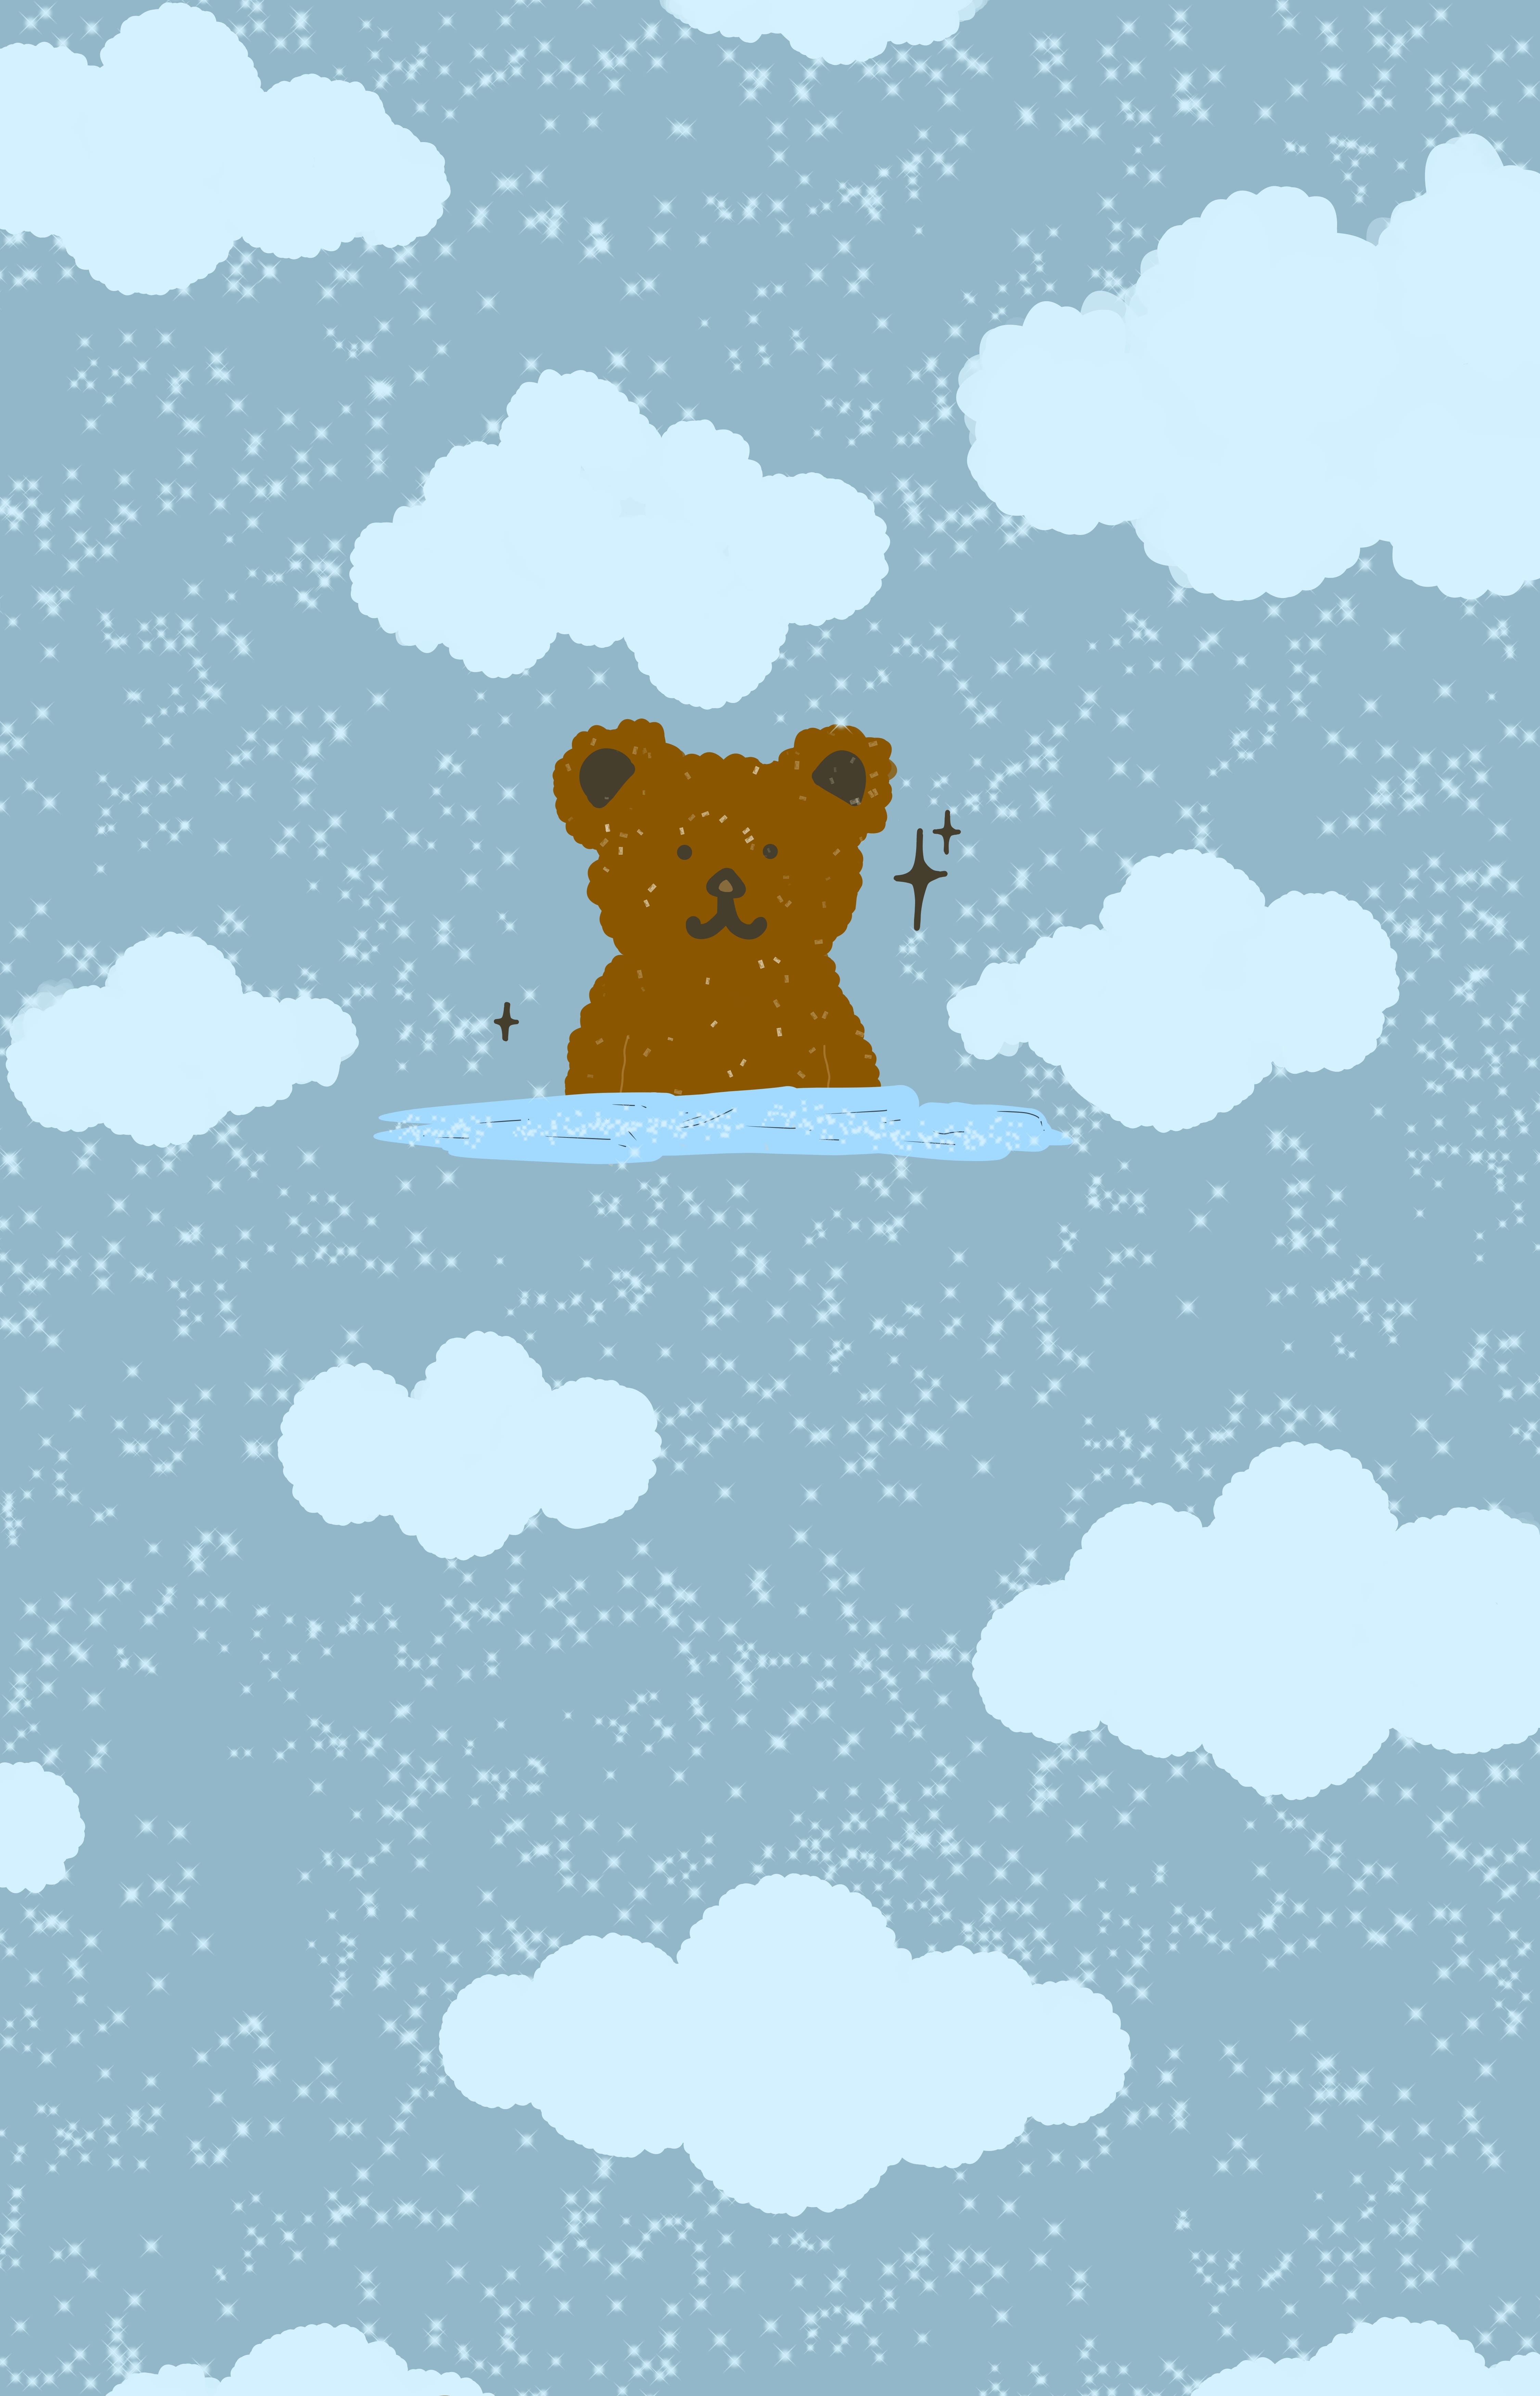 A bear sitting on a cloud in the sky - Teddy bear